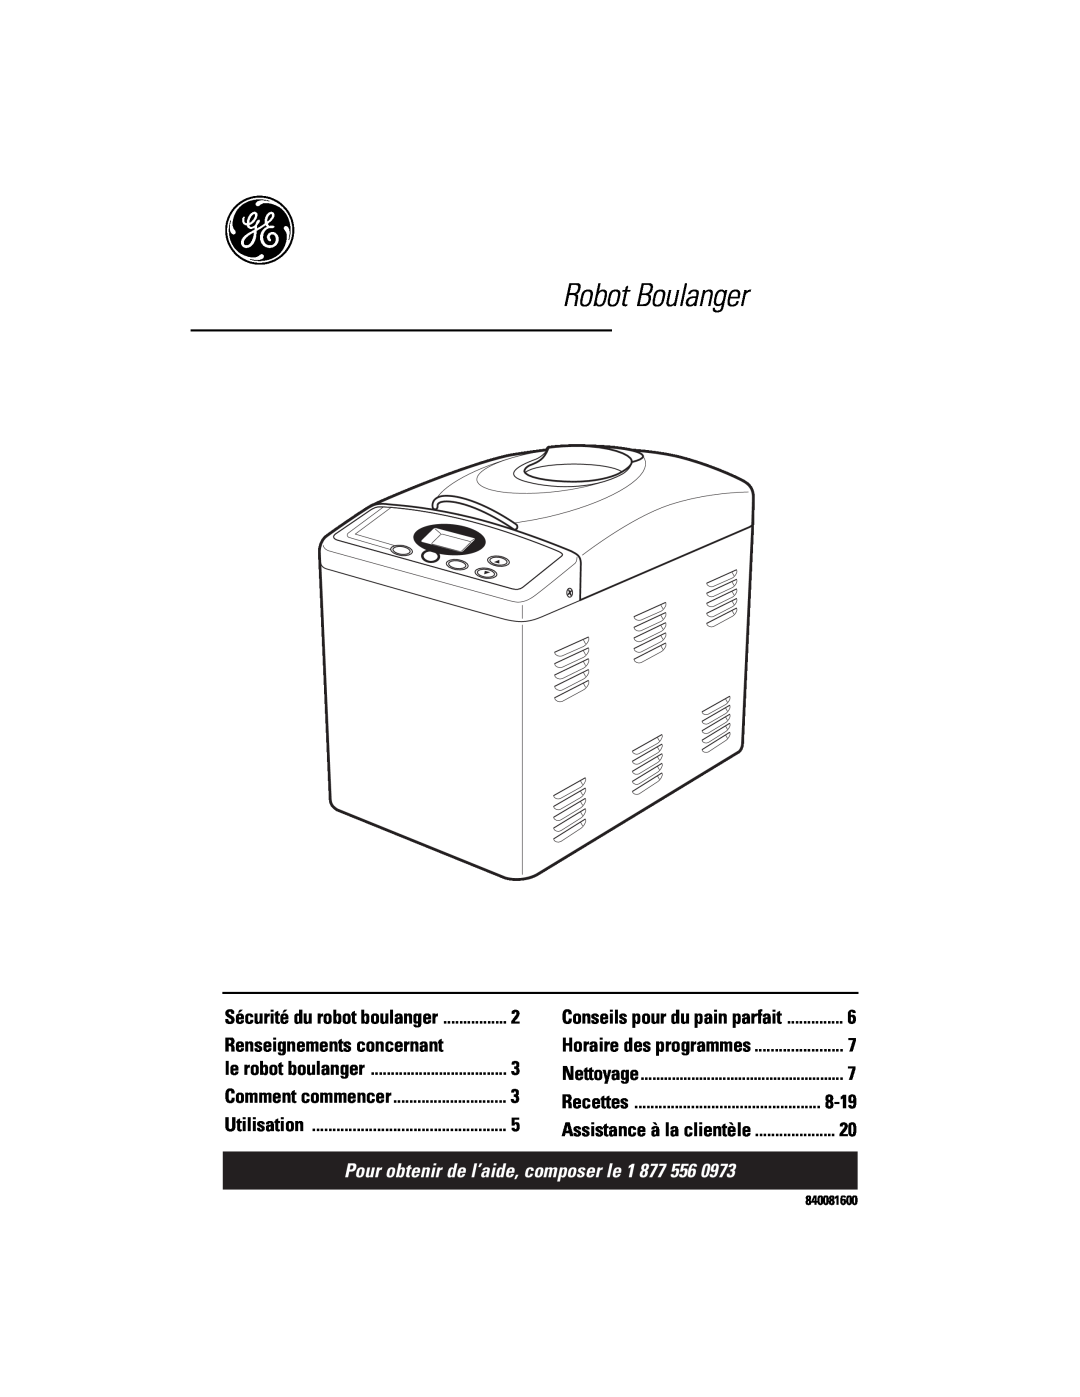 GE 840081600 Robot Boulanger, Renseignements concernant, Pour obtenir de l’aide, composer le 1, 8-19, le robot boulanger 